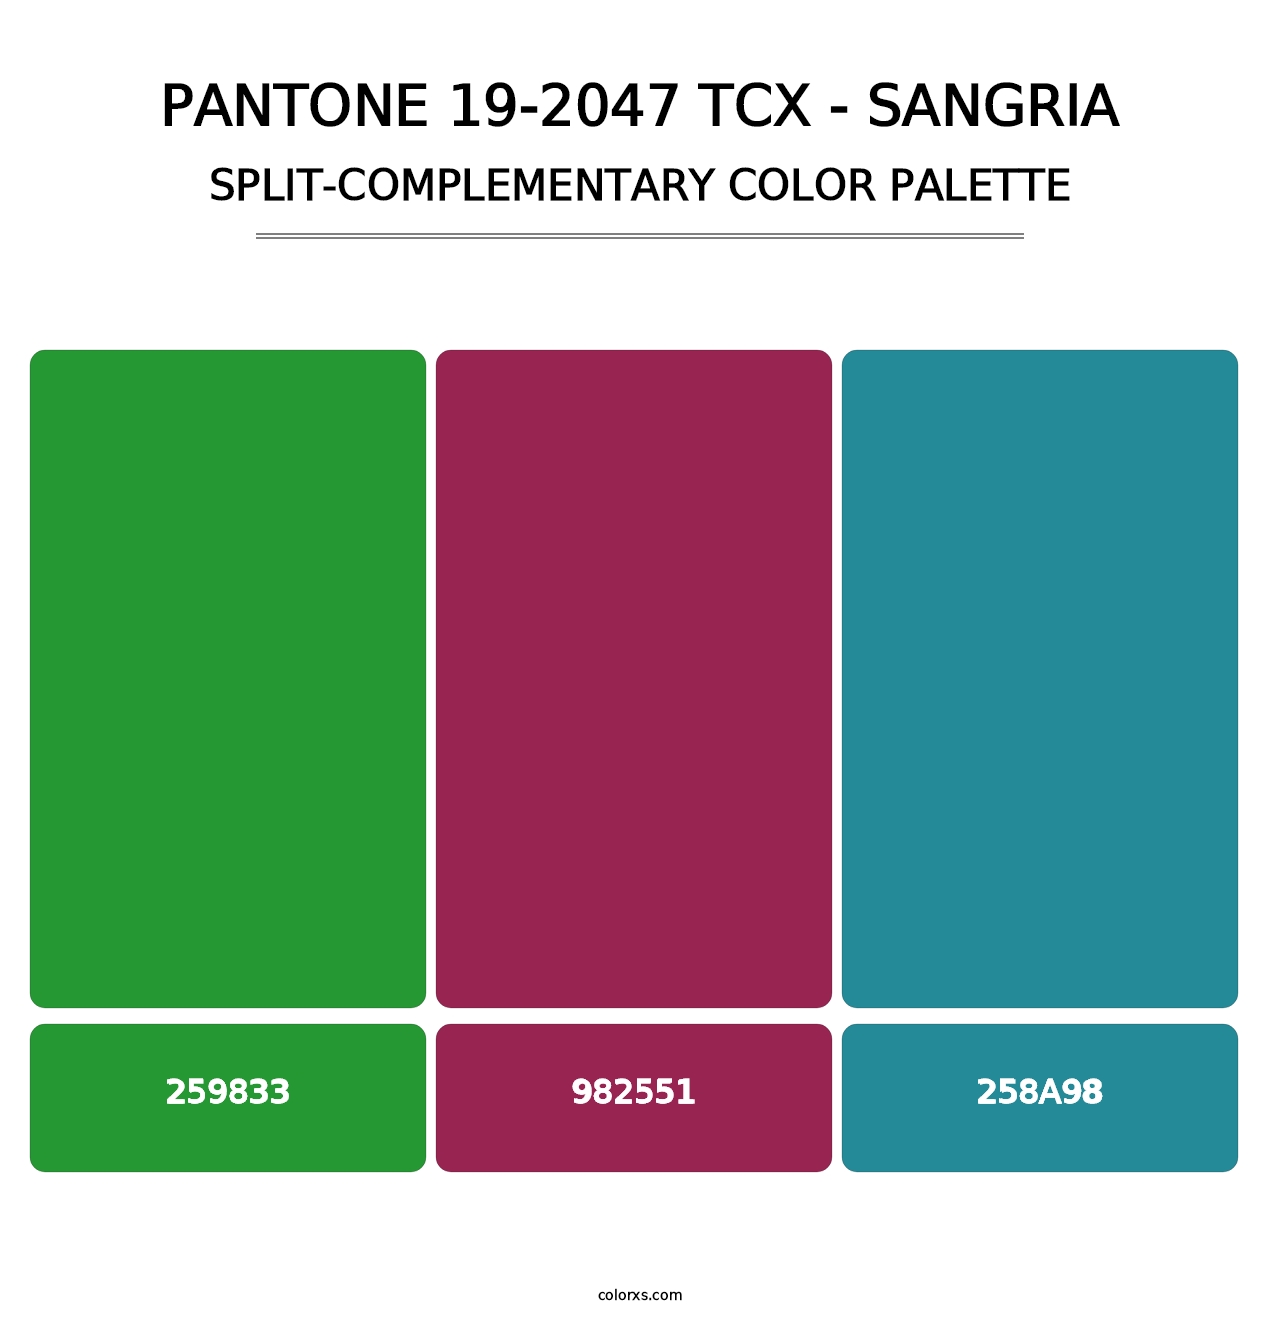 PANTONE 19-2047 TCX - Sangria - Split-Complementary Color Palette